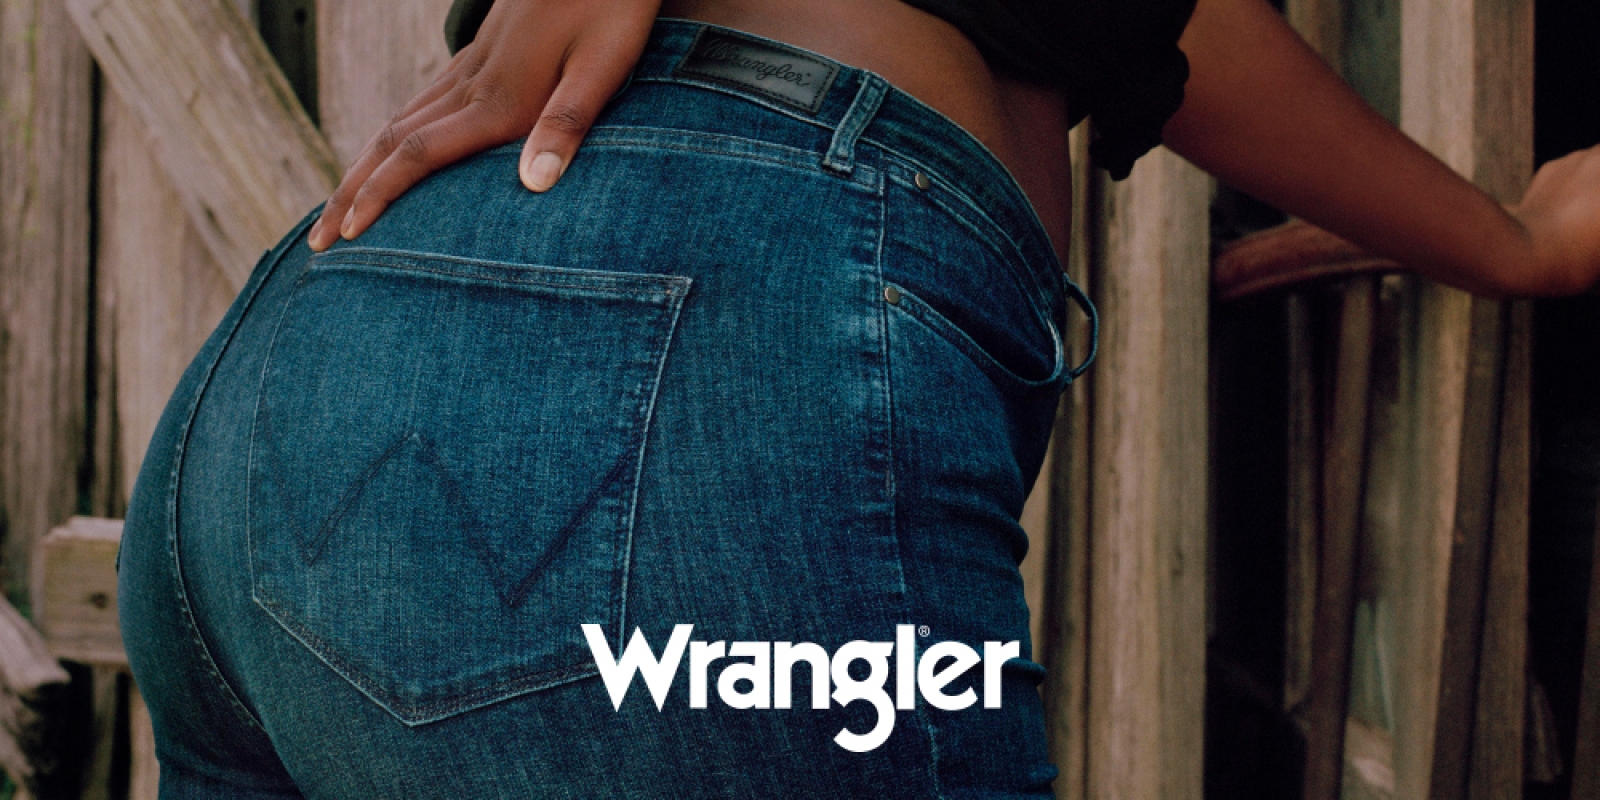 Wrangler jeans, vaqueros de calidad, cómodos y resistentes